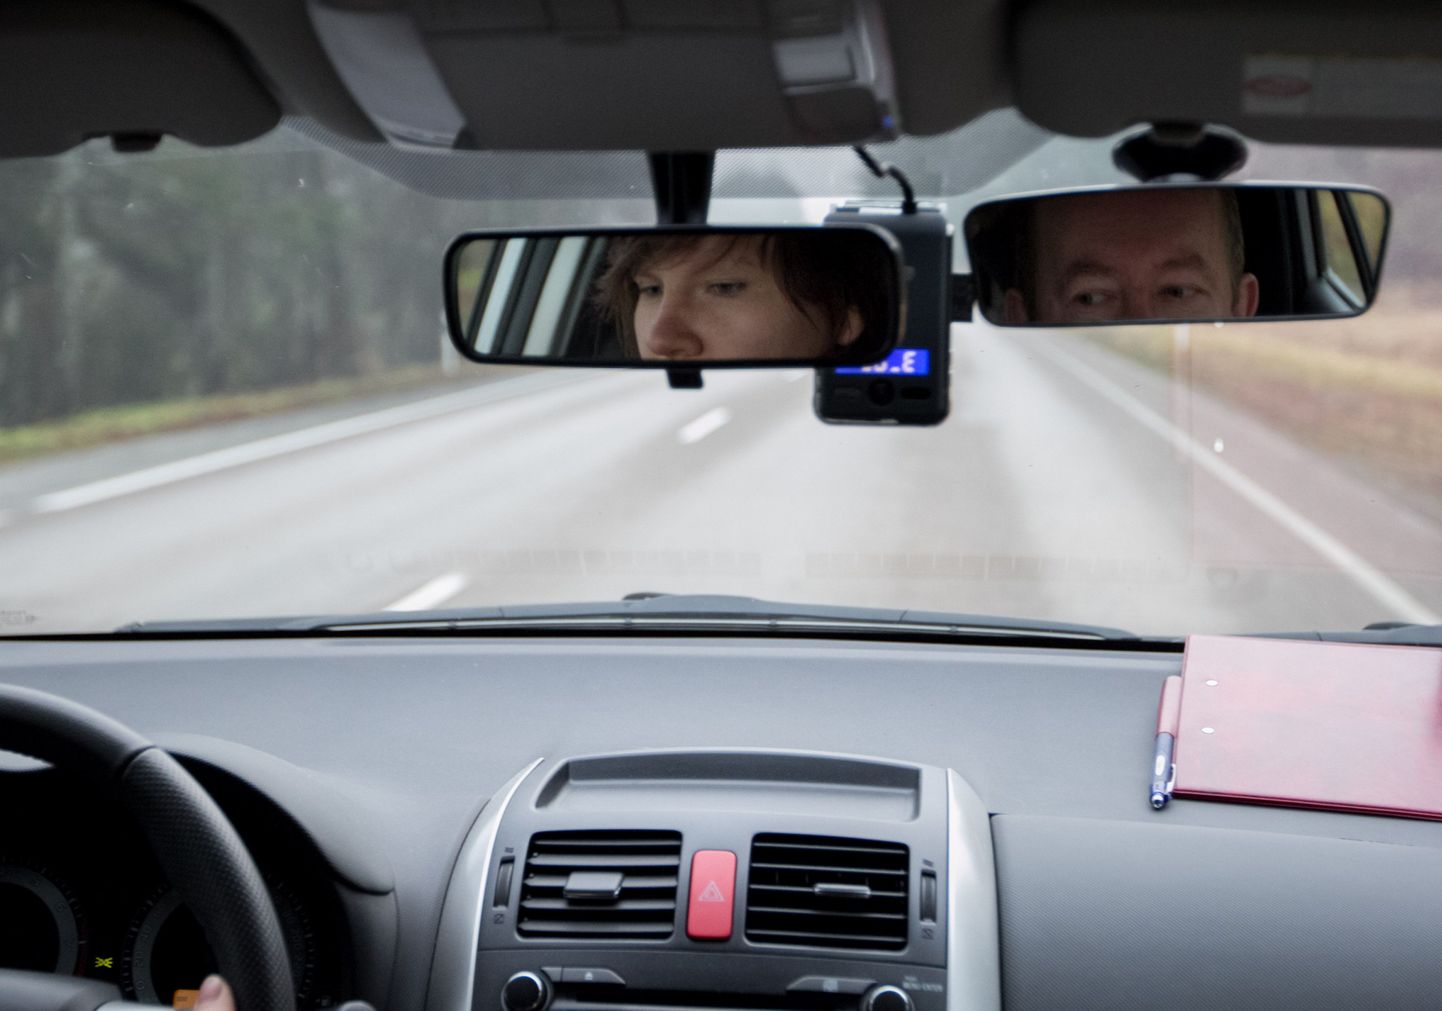 Liiklusregistri Valgamaa büroo juhataja Aivar Tumanovi valvas kotkapilk jälgis eksaminandi igat manööverdust ja liigutust, et veenduda, kas juht on liikluses osalemiseks küps.